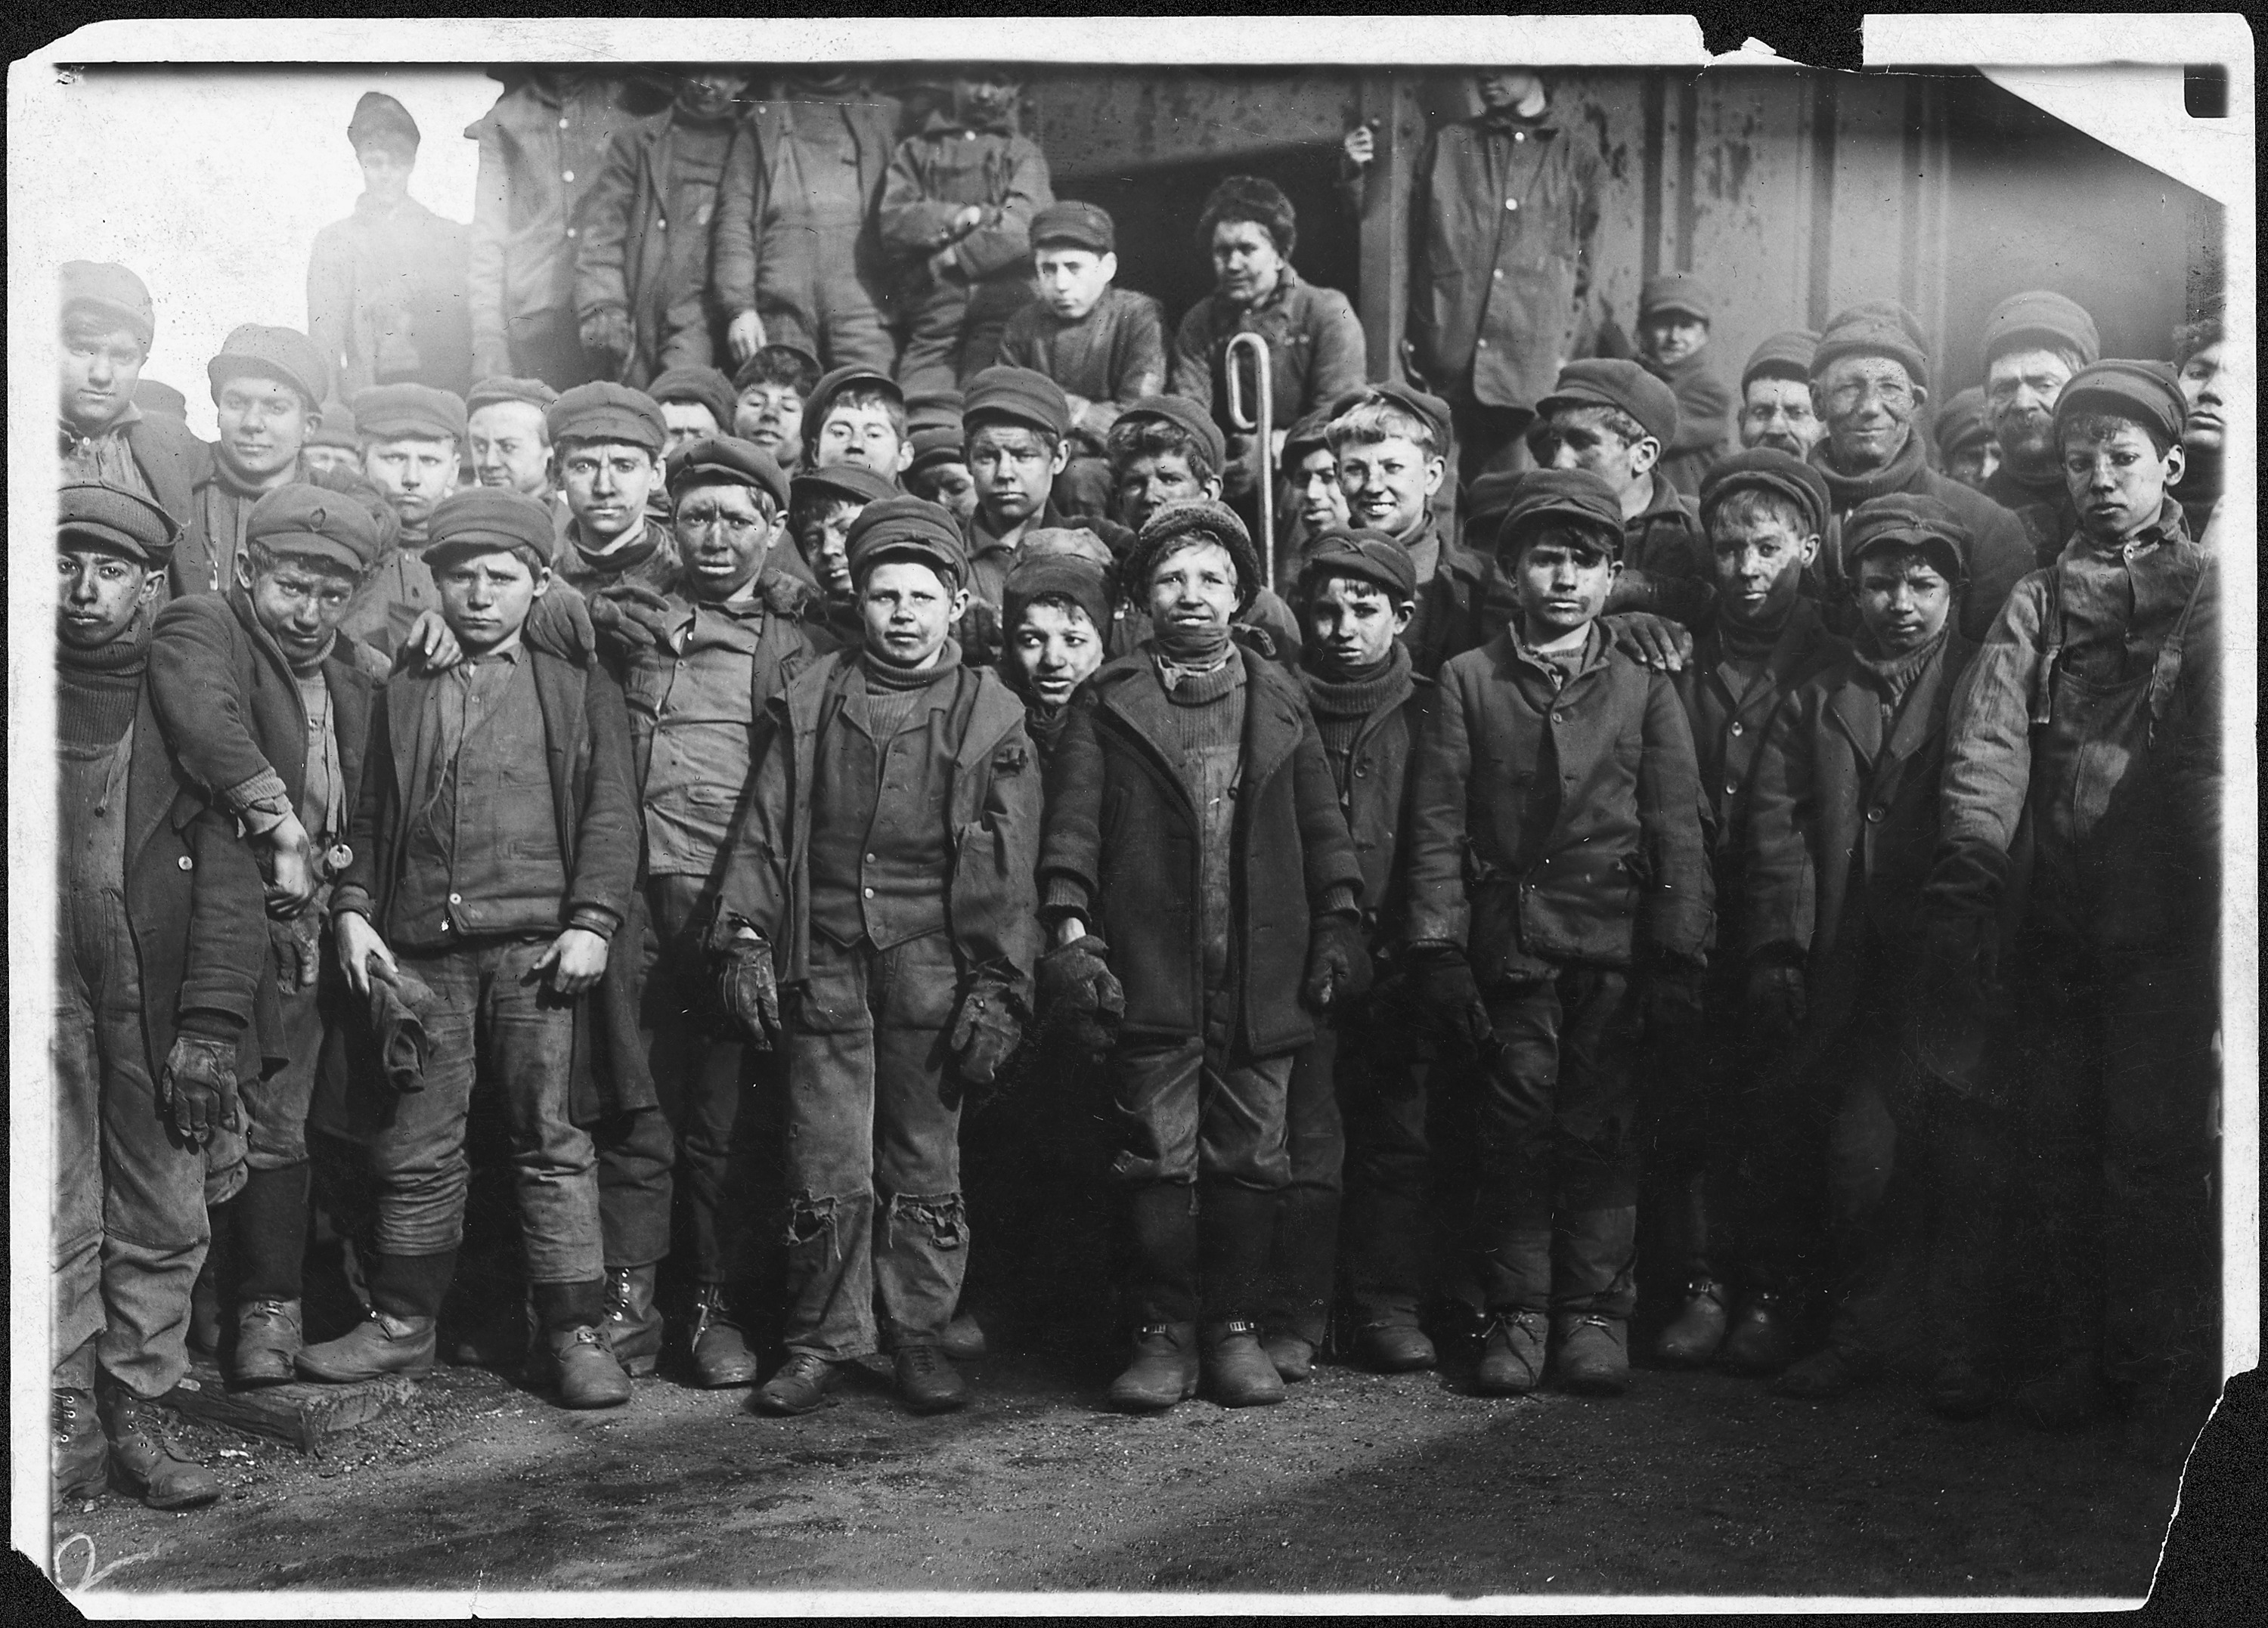 Breaker boys working in Ewen Breaker. S. Pittston, Pa. - NARA - 523379